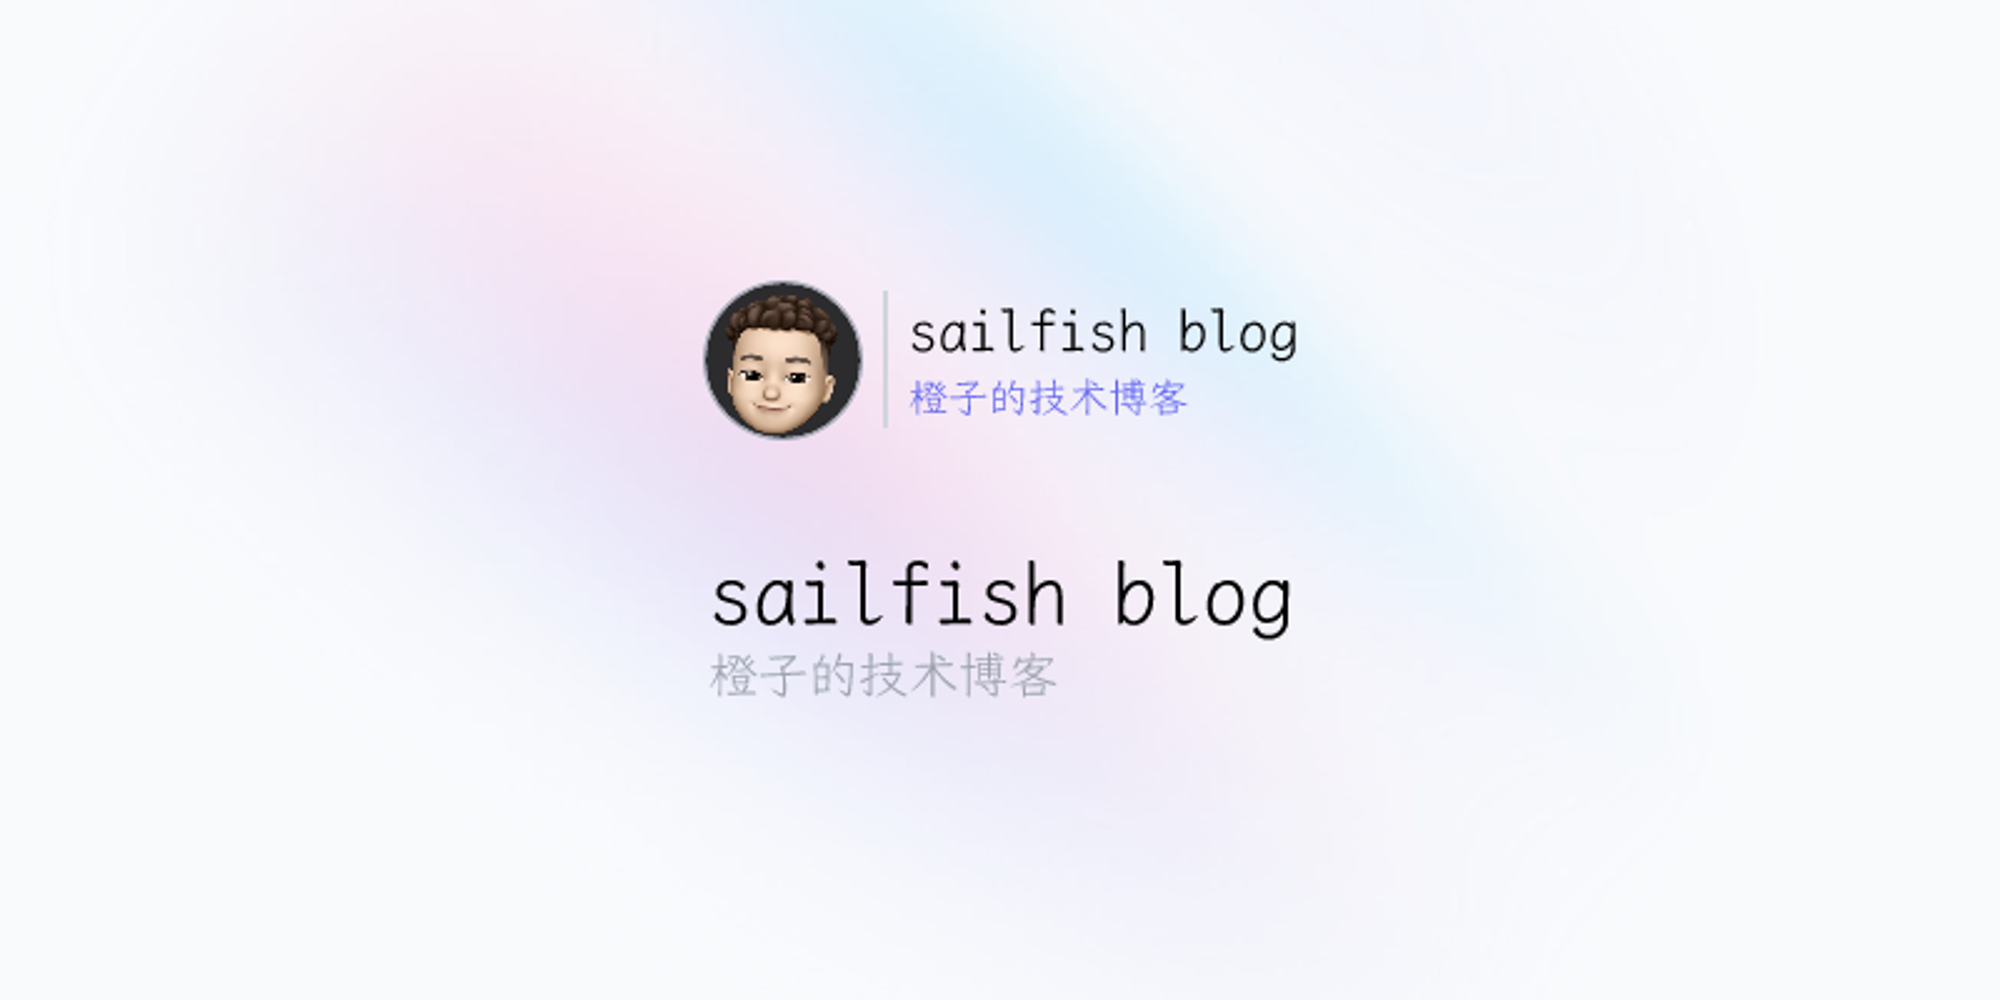 sailfish blog